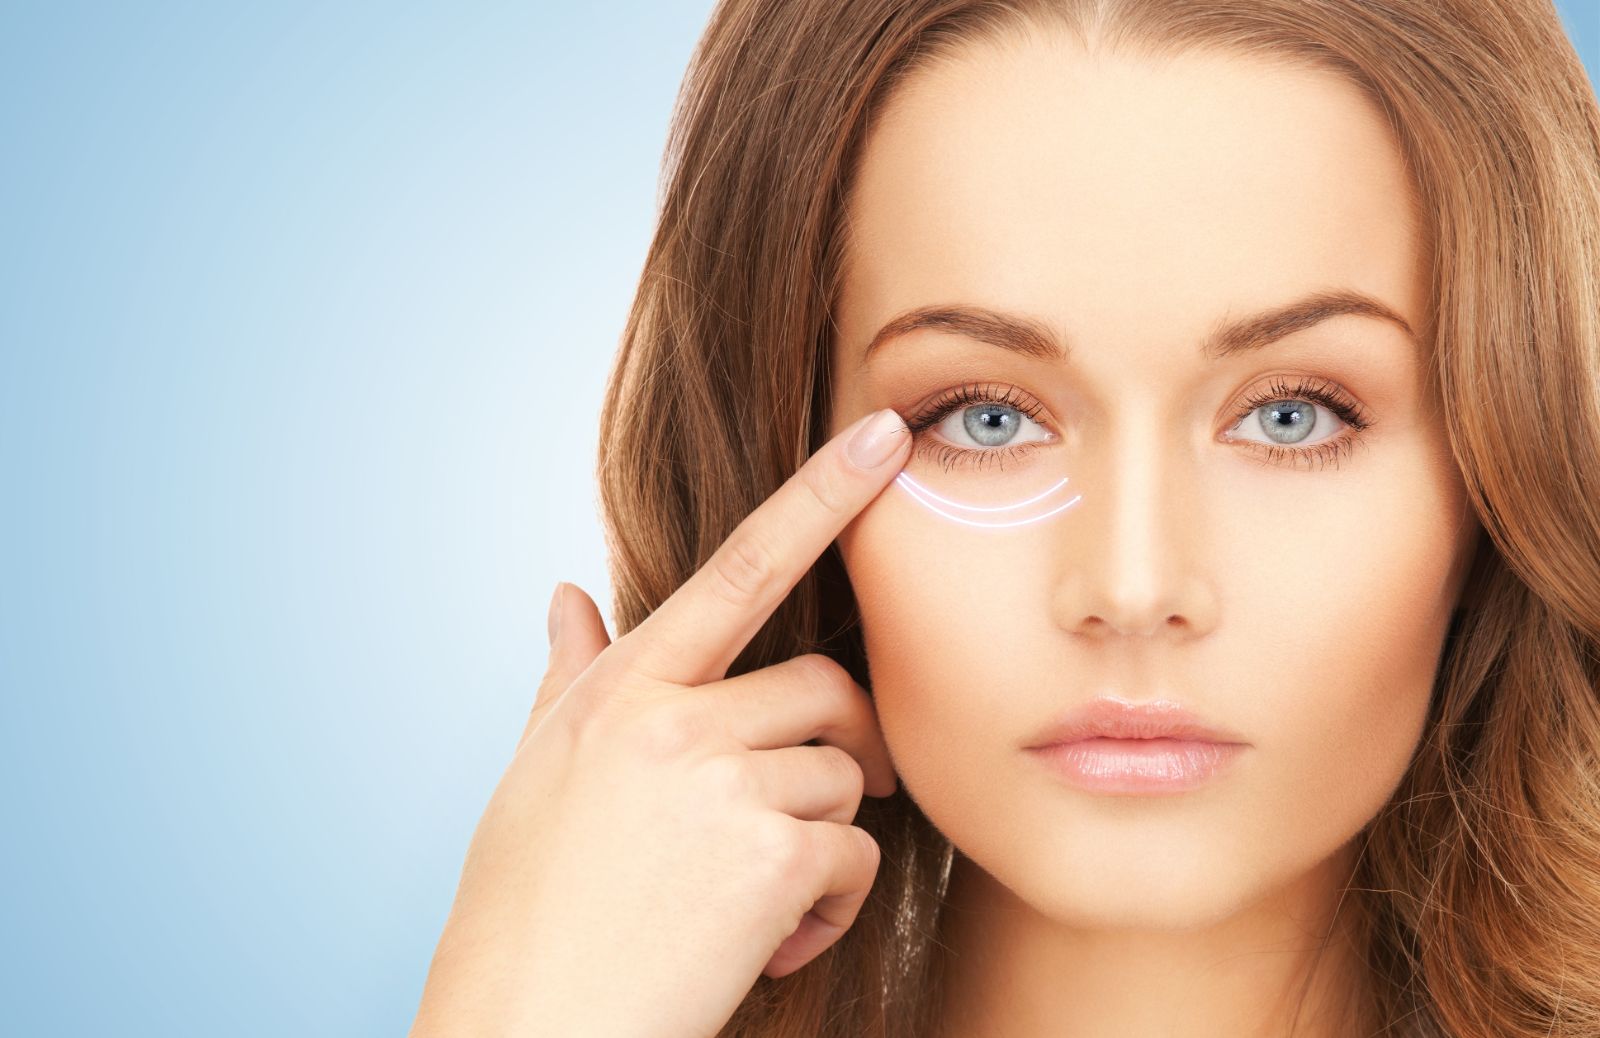 La blefaroplastica (superiore e inferiore) può danneggiare la vista e l'occhio? 